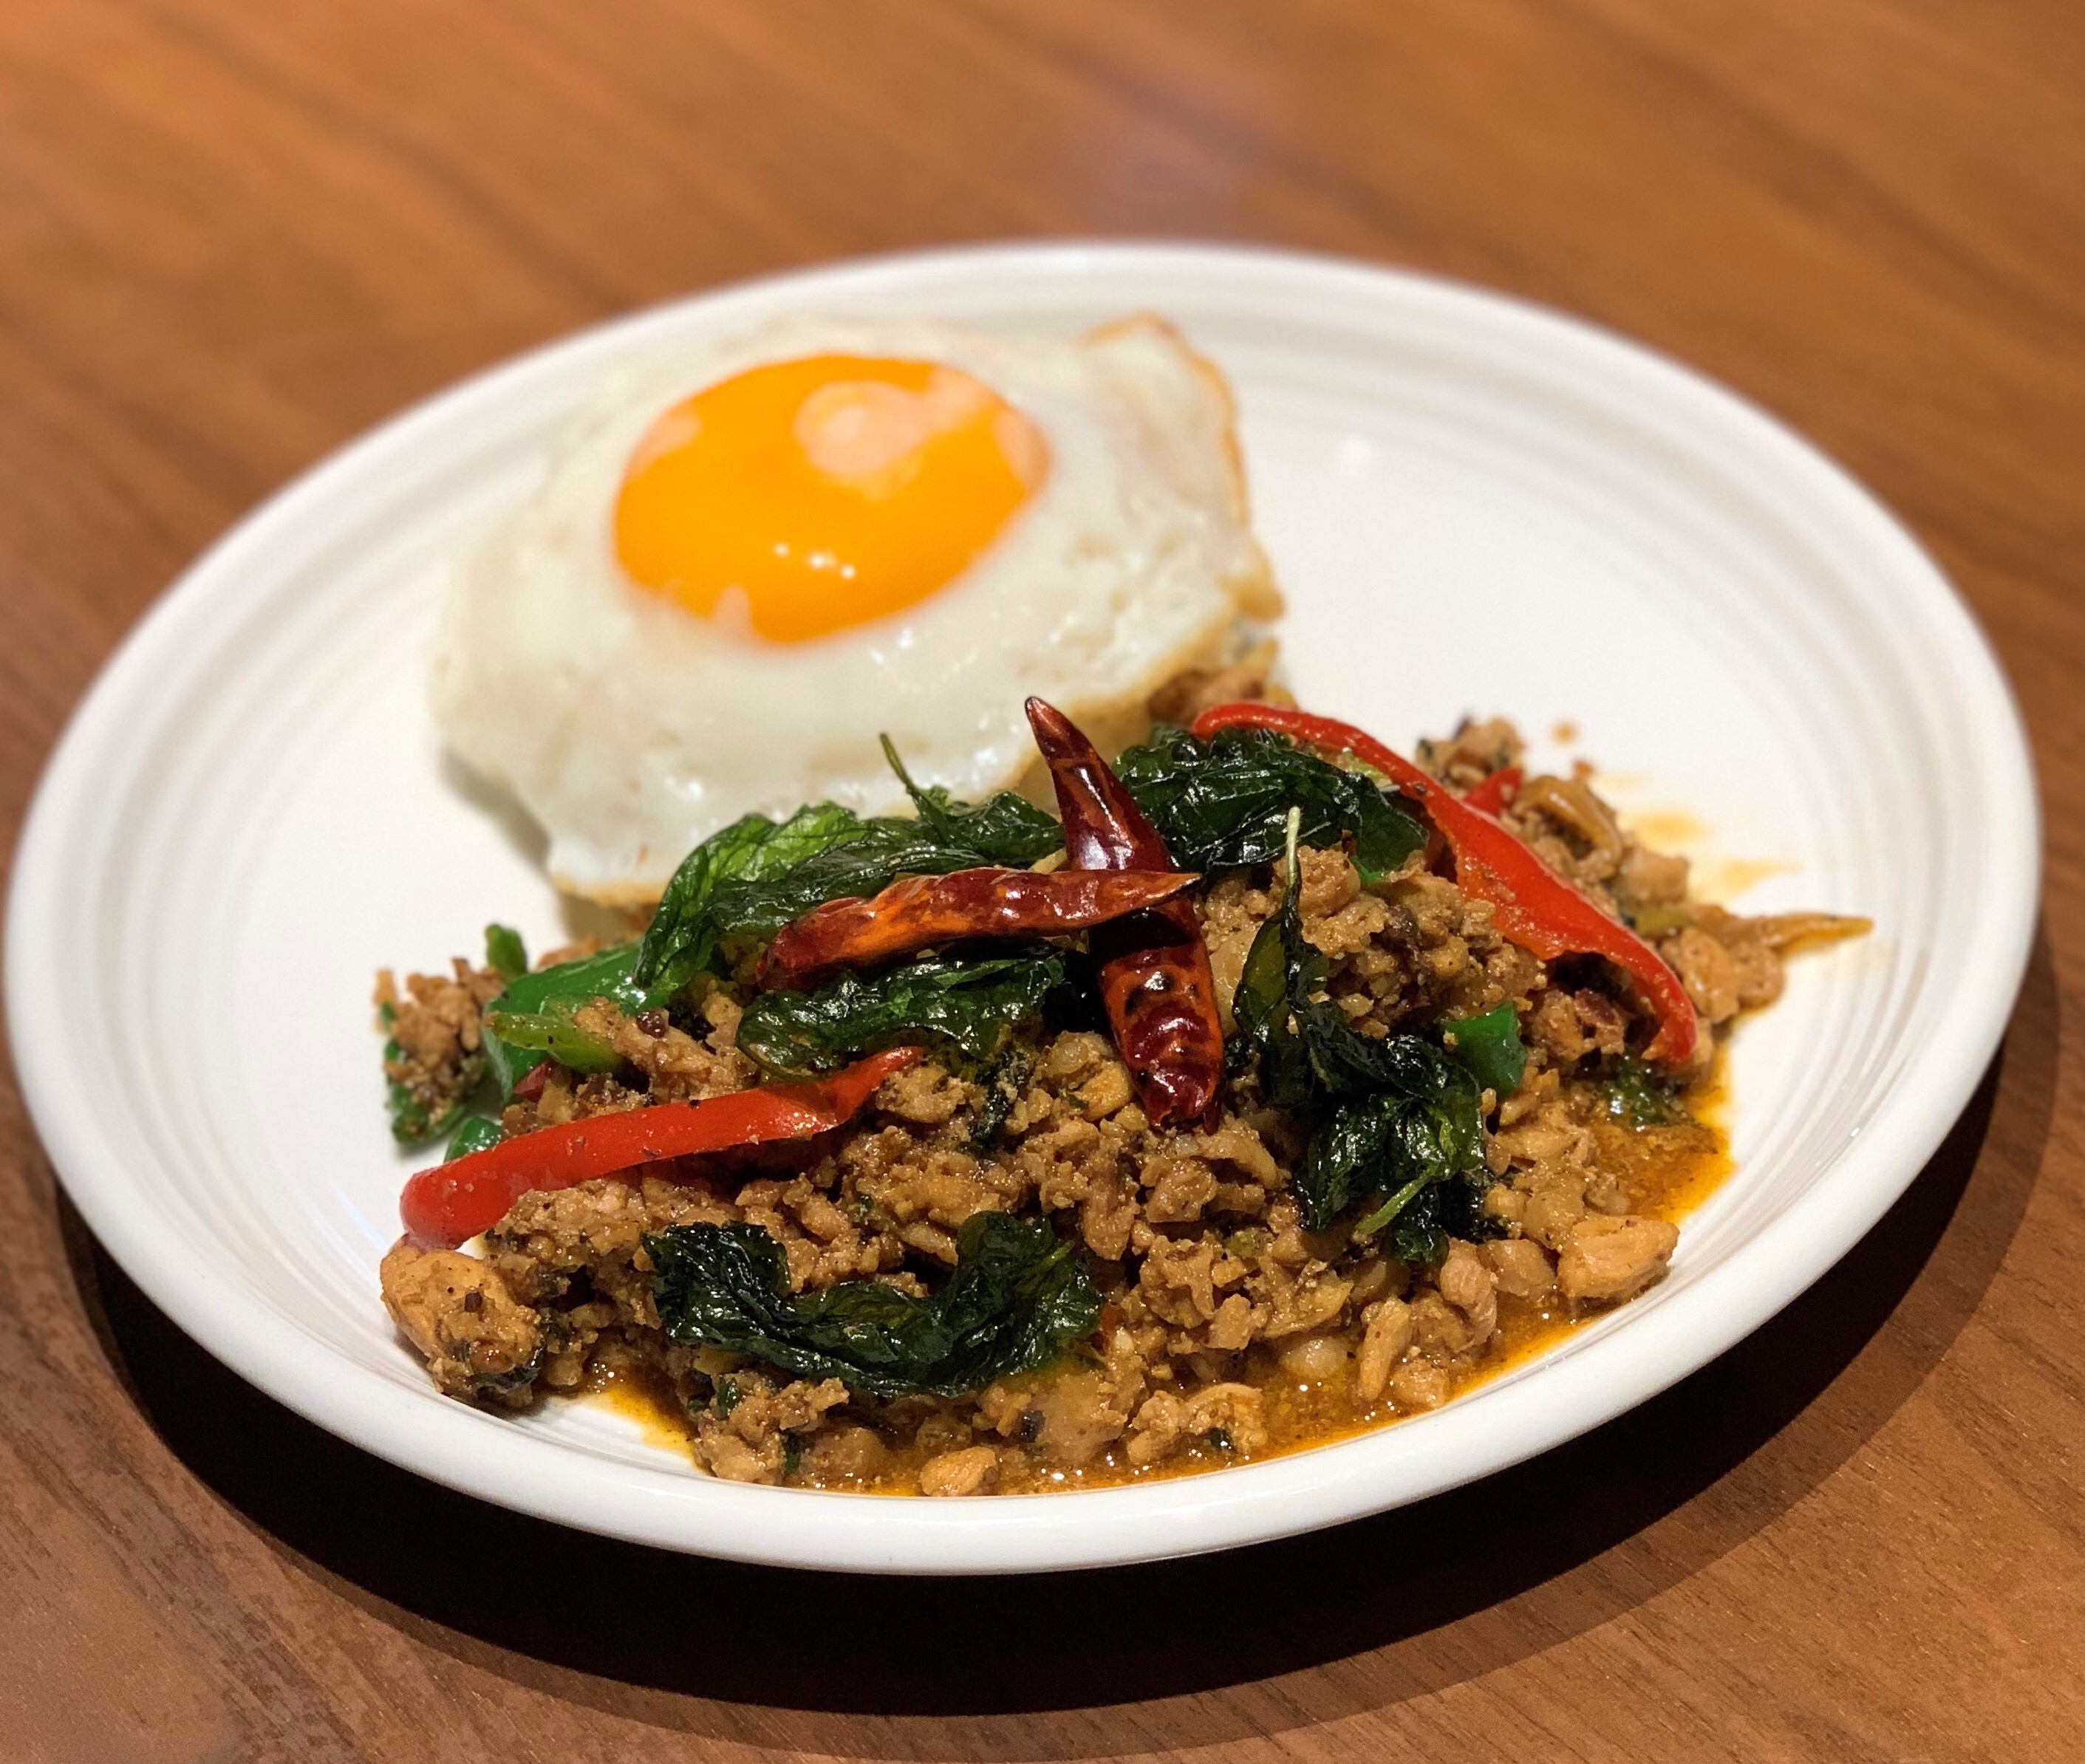 国内初の火鍋風 食べ比べエスニック鍋 を赤坂のタイ料理 ギンカーオ で提供開始 トムヤム鍋とグリーンカレー鍋を一度に堪能 Gin Khao Cafe California Thaiのプレスリリース